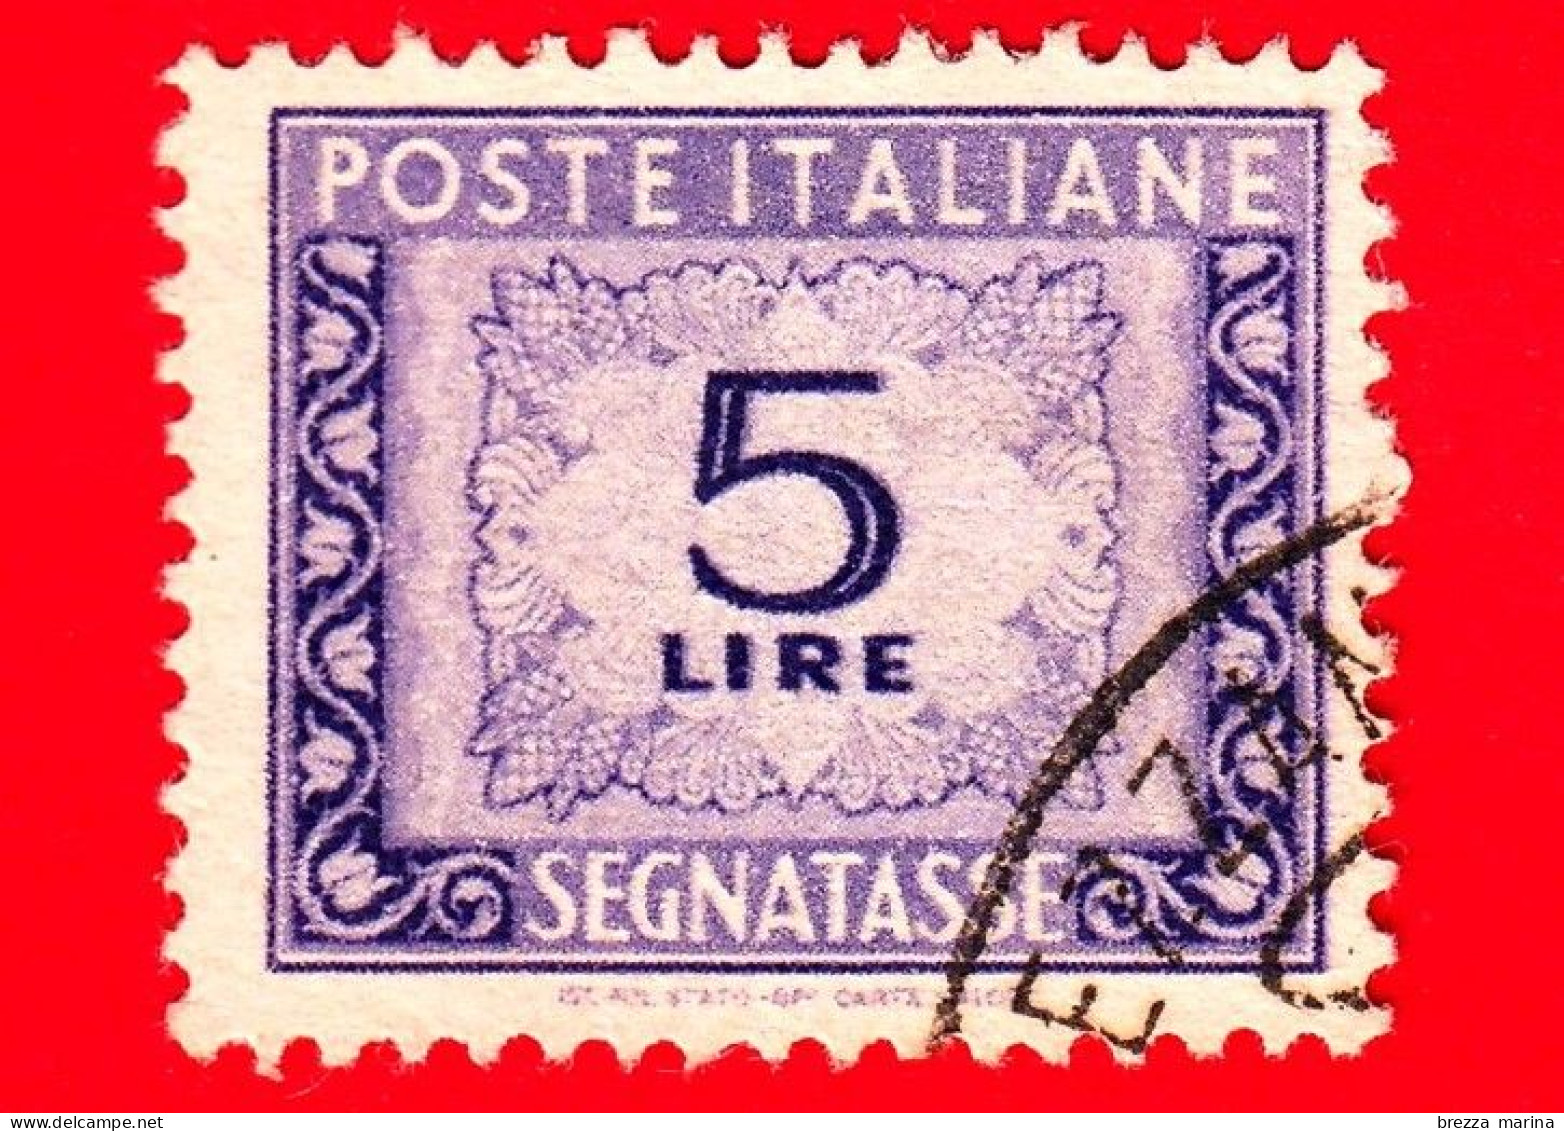 ITALIA - Usato - 1947 - Cifra E Decorazioni, Filigrana Ruota - Segnatasse - 5 L. • Cifra E Decorazioni - Segnatasse